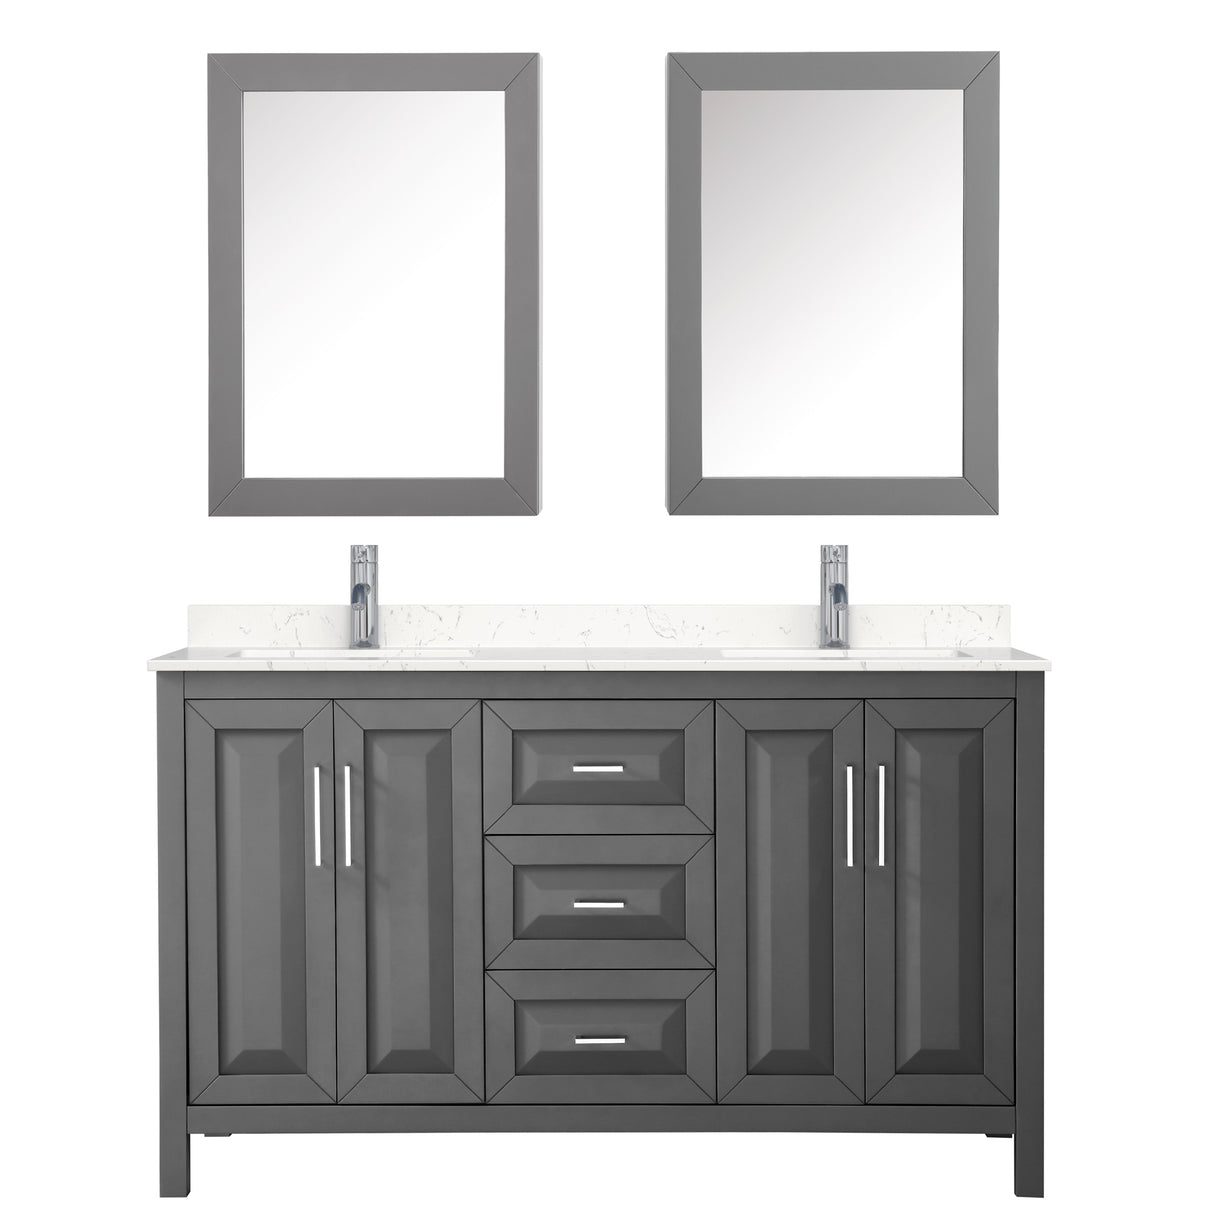 Daria 60 Inch Double Bathroom Vanity in Dark Gray Carrara Cultured Marble Countertop Undermount Square Sinks Medicine Cabinets